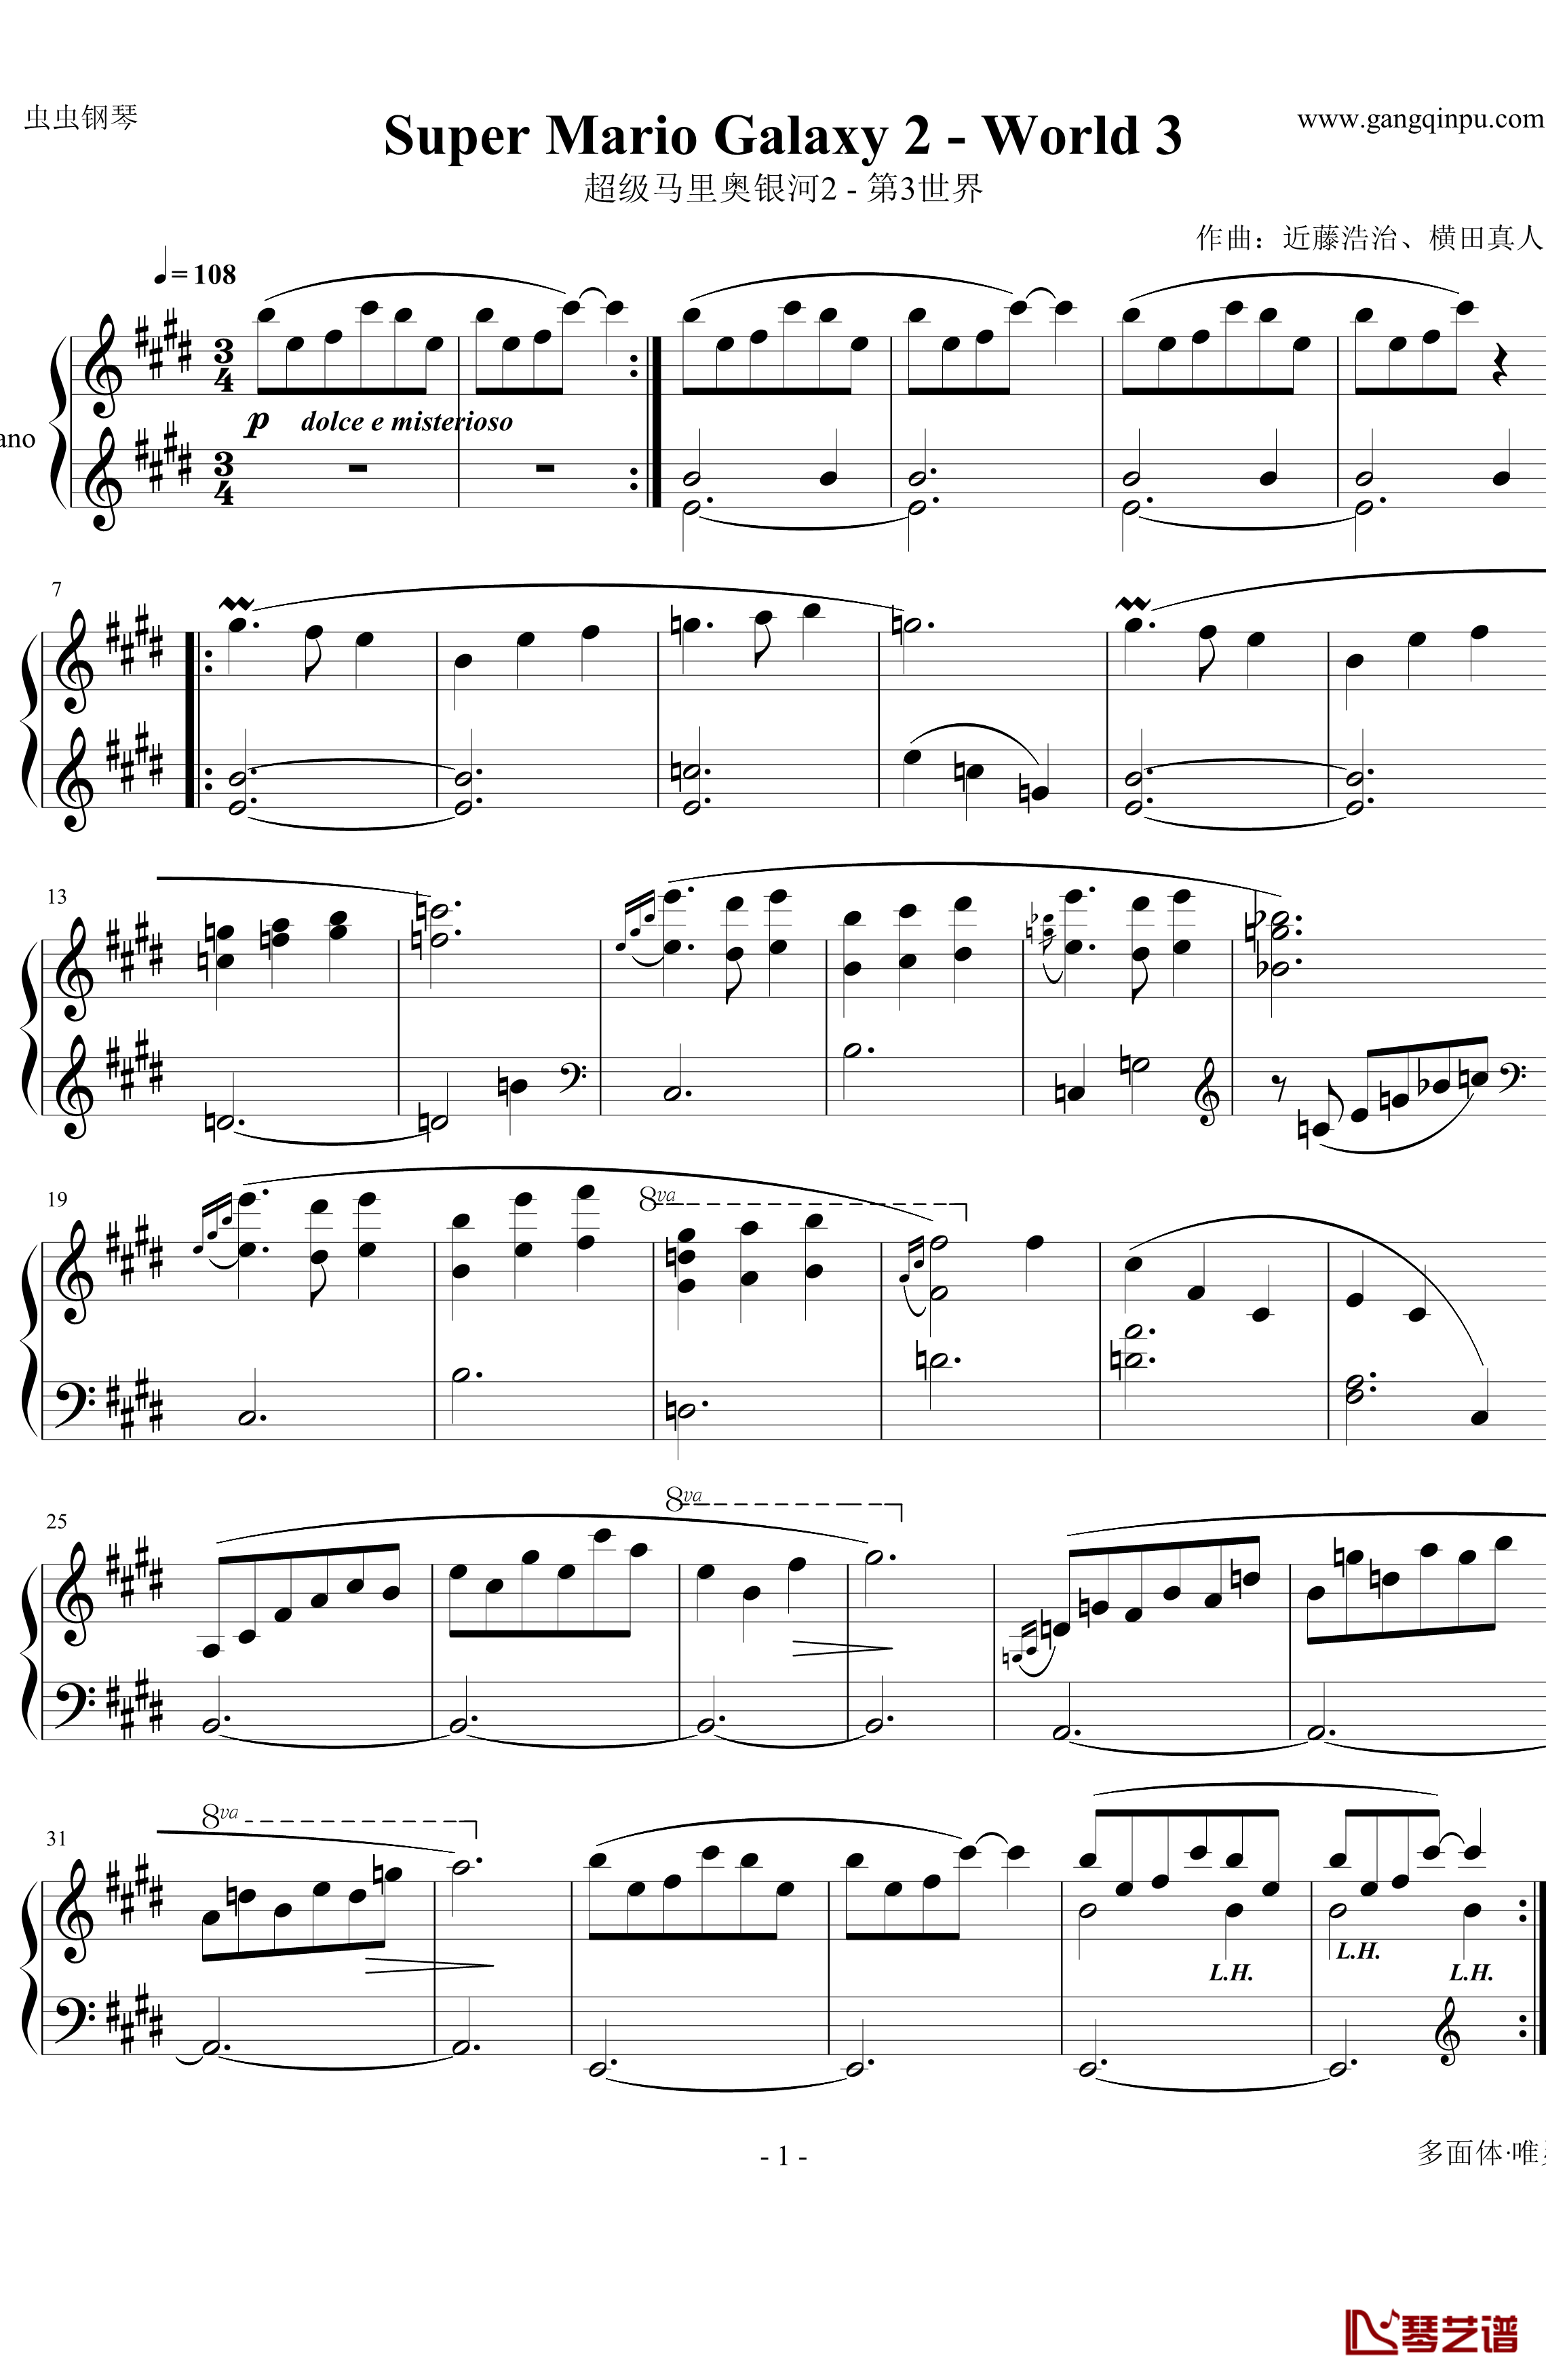 超级马里奥银河2钢琴谱 - 第3世界-马里奥1